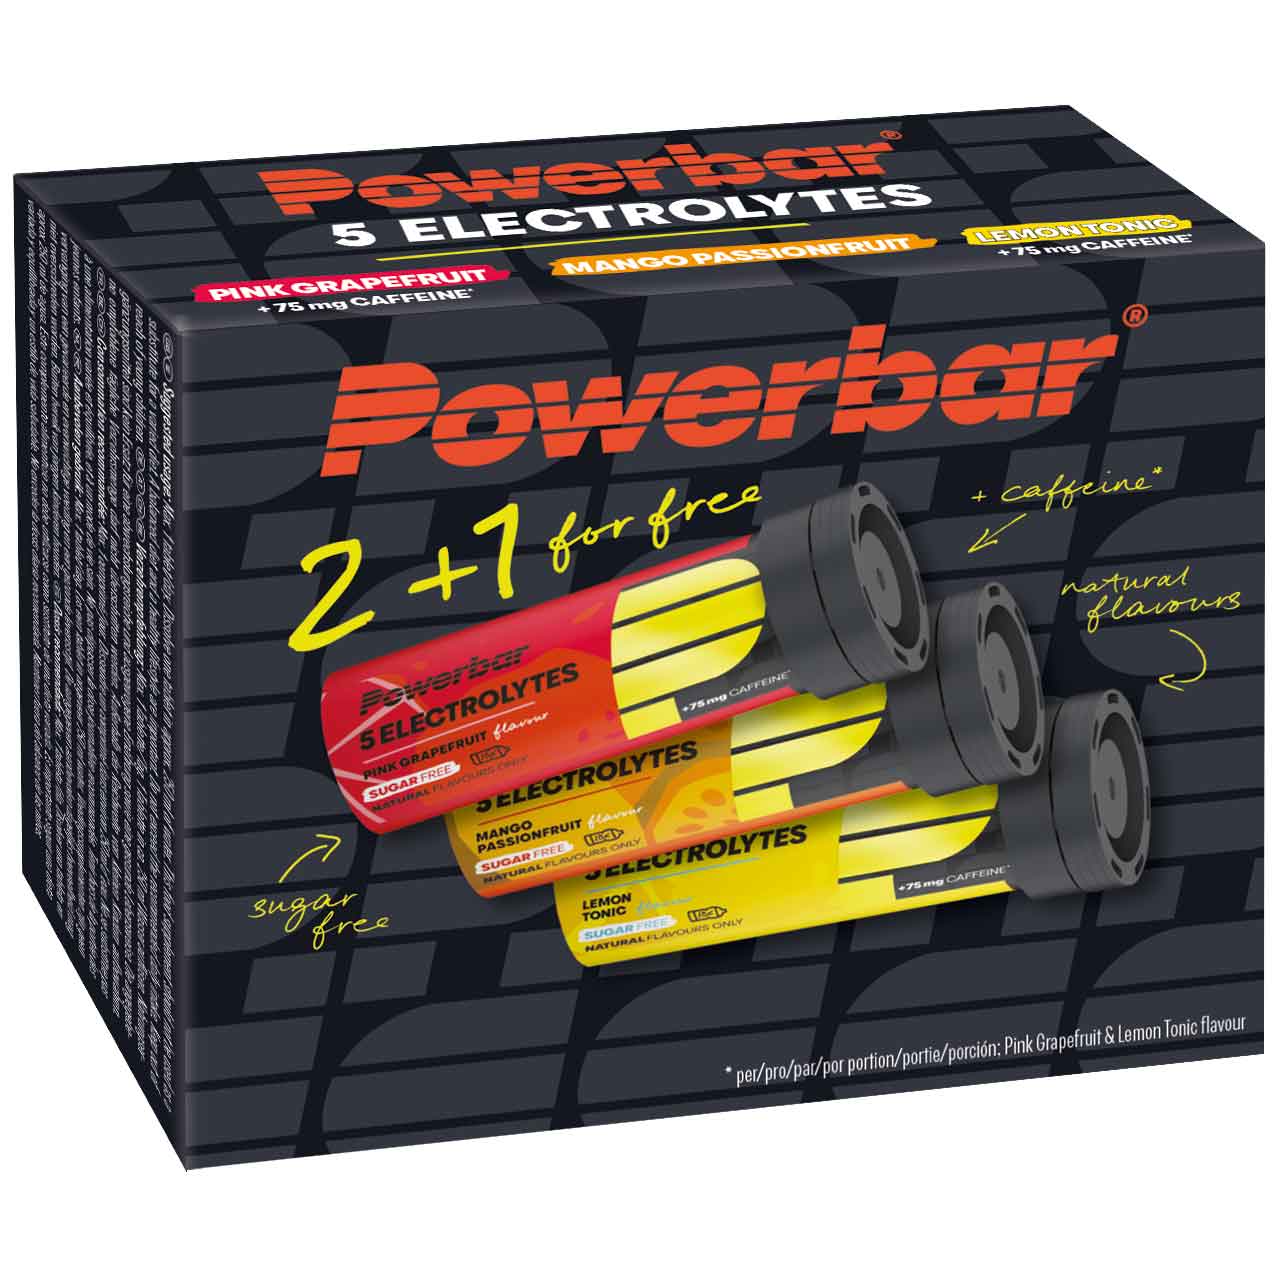 Foto de Powerbar Pastillas Efervescentes - 5Electrolytes Multiflavour Pack - 2 + 1 gratis (30 piezas)